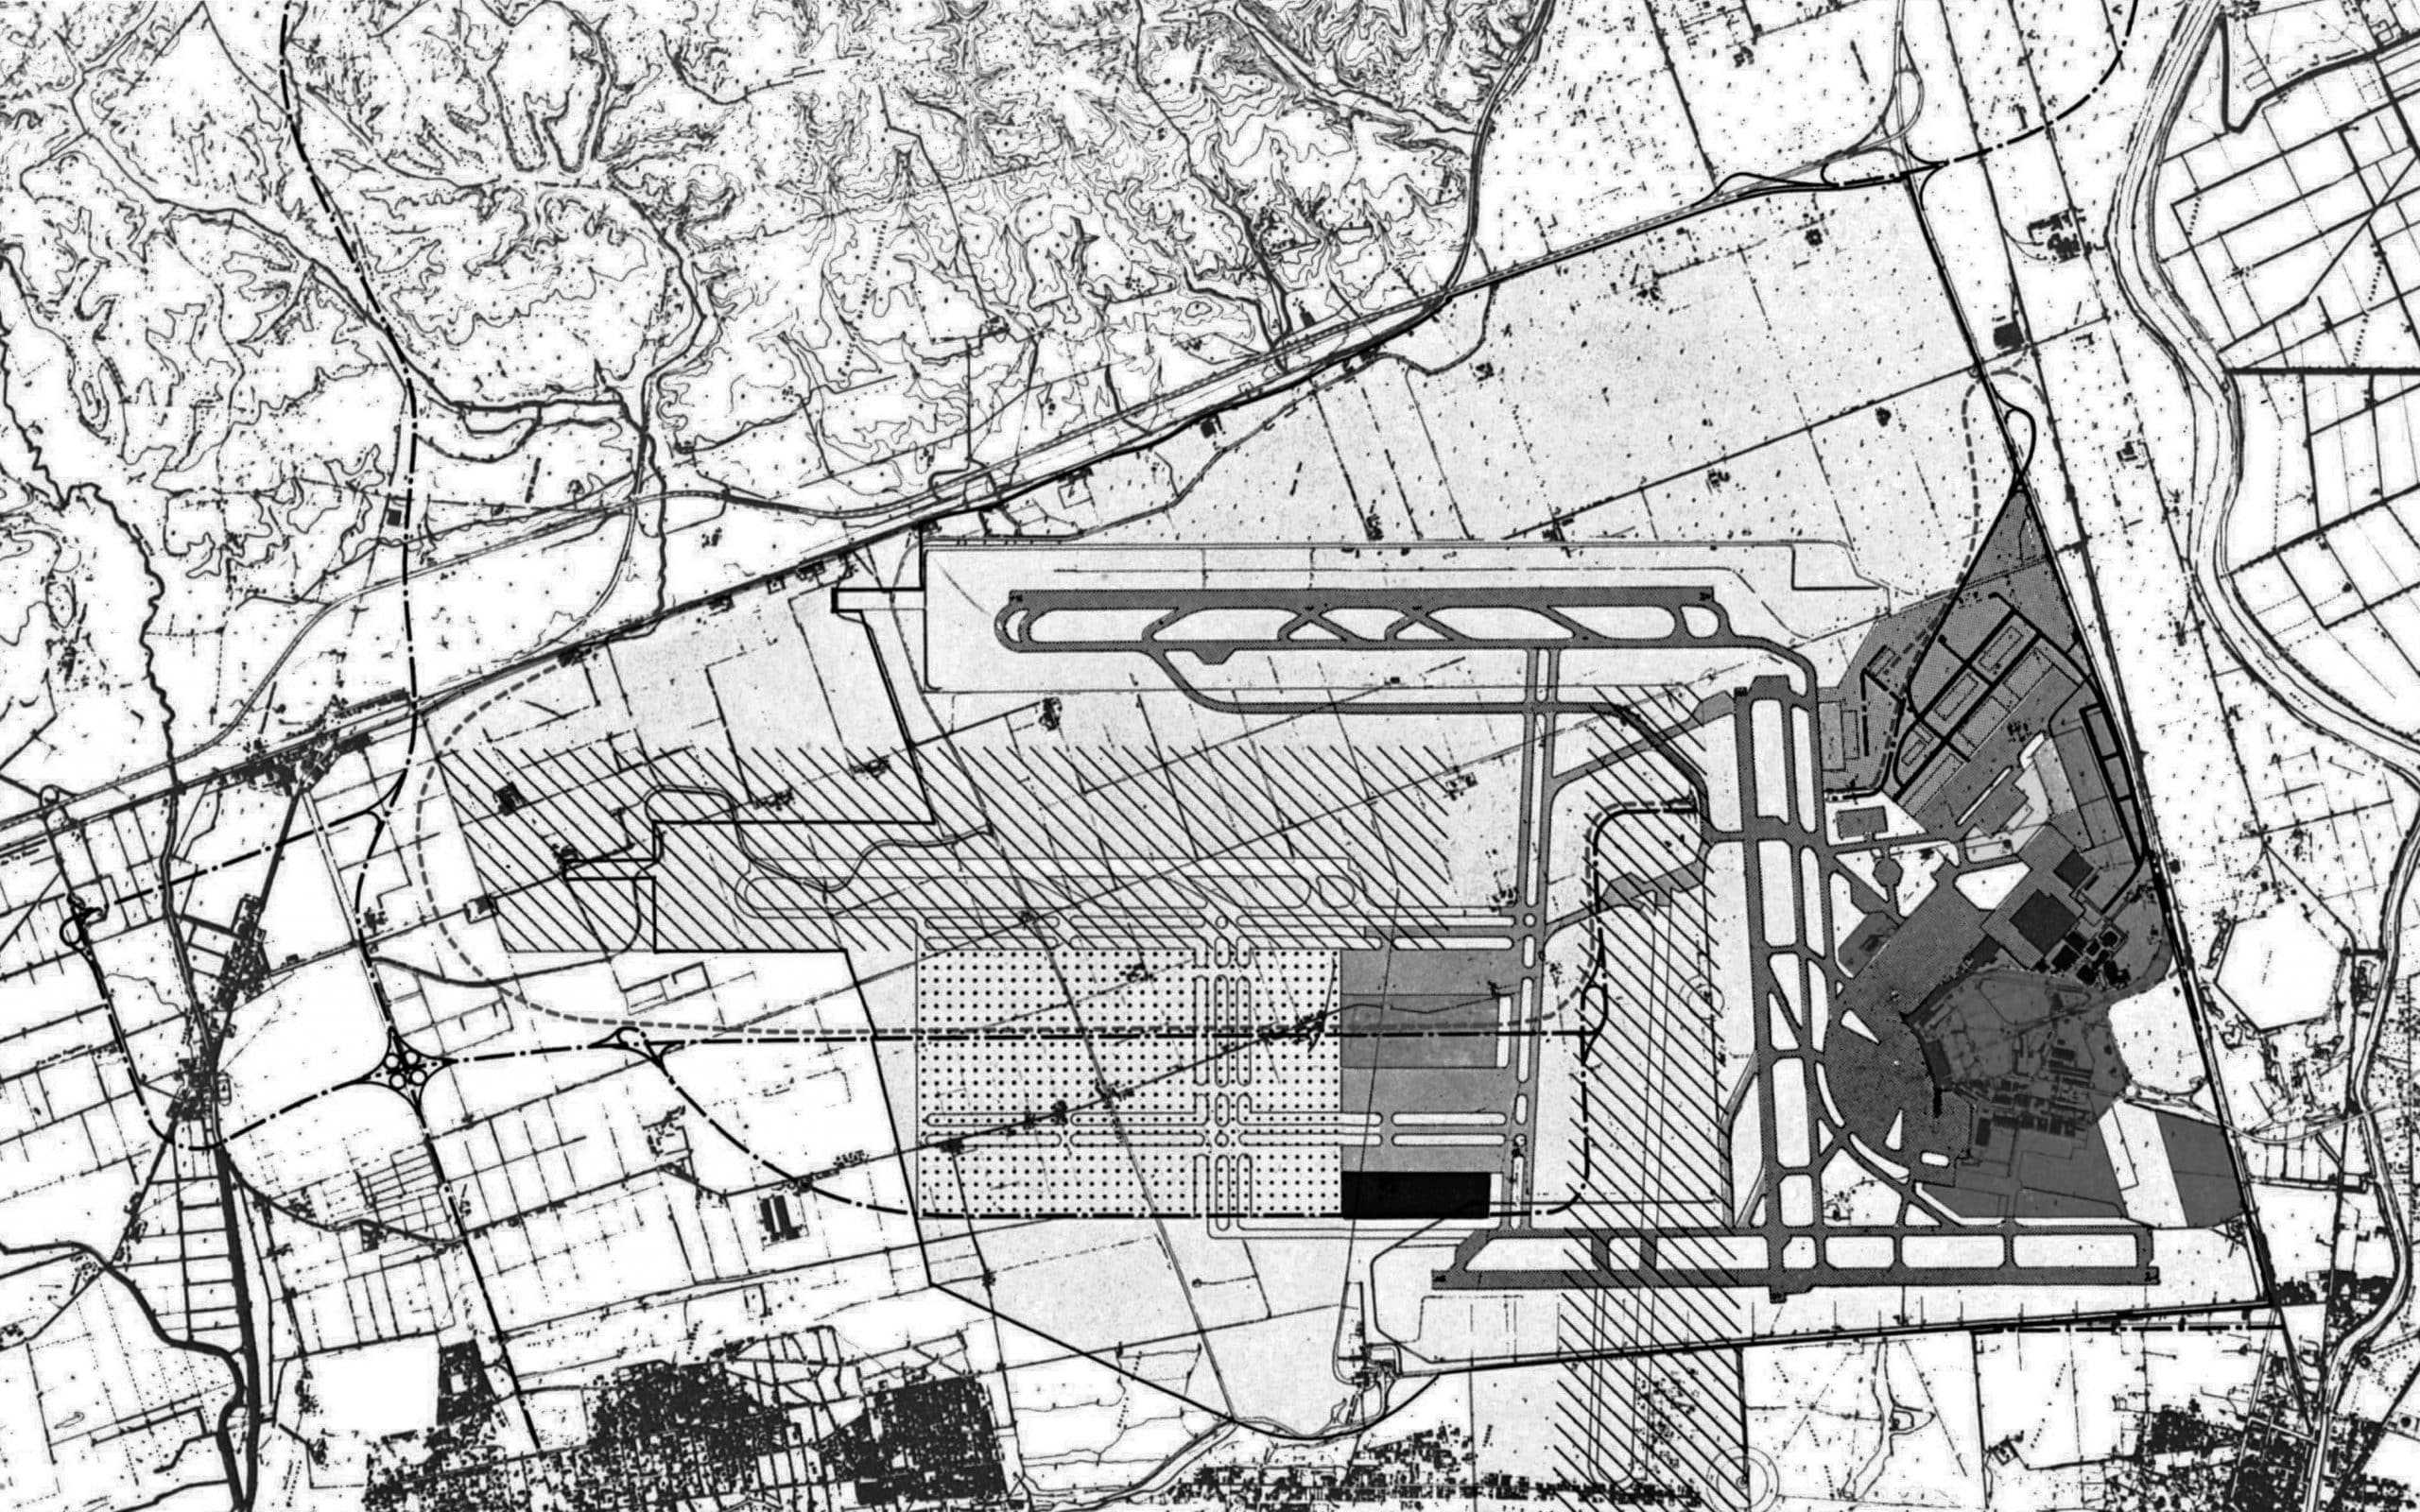 11 - Piano di ammodernamento e sviluppo a Medio e Lungo Termine, Aeroporto “L. Da Vinci”, Fiumicino (RM), per ADR - Planimetria generale